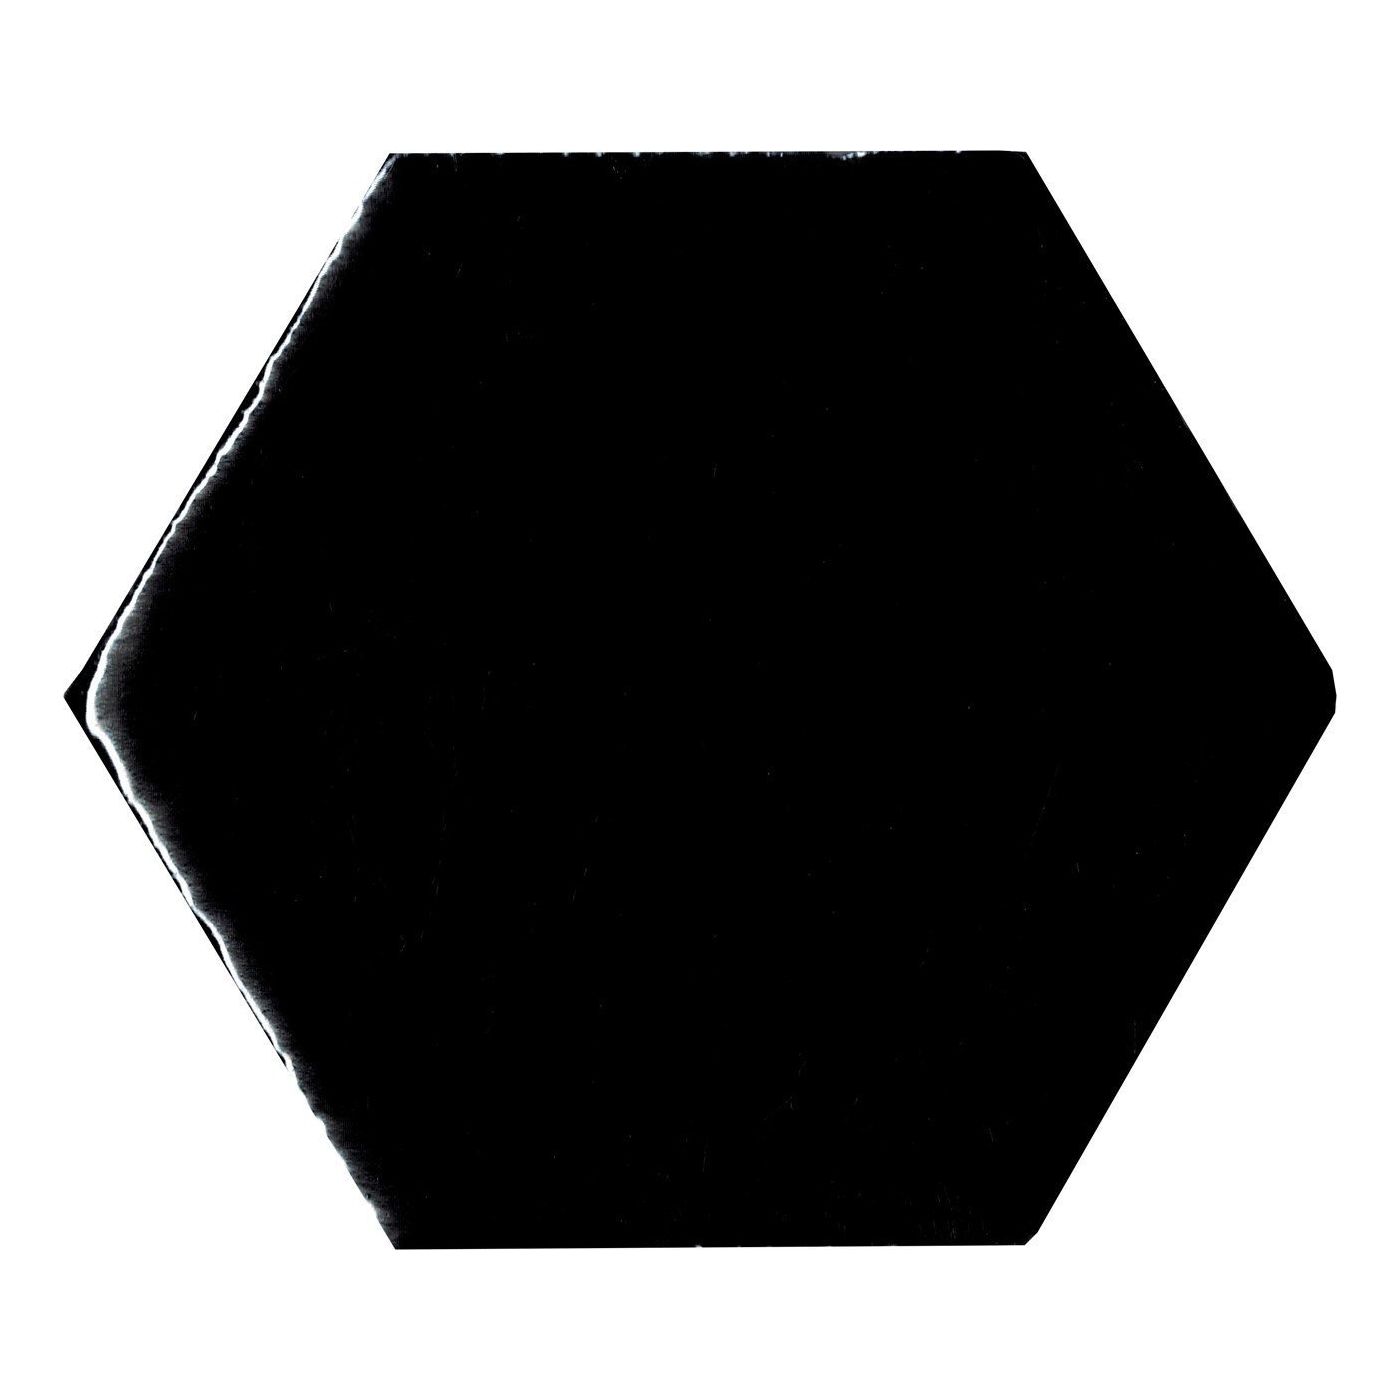 Alcoceram hexagon tegel Manual Exagono 10X11,5 Negro